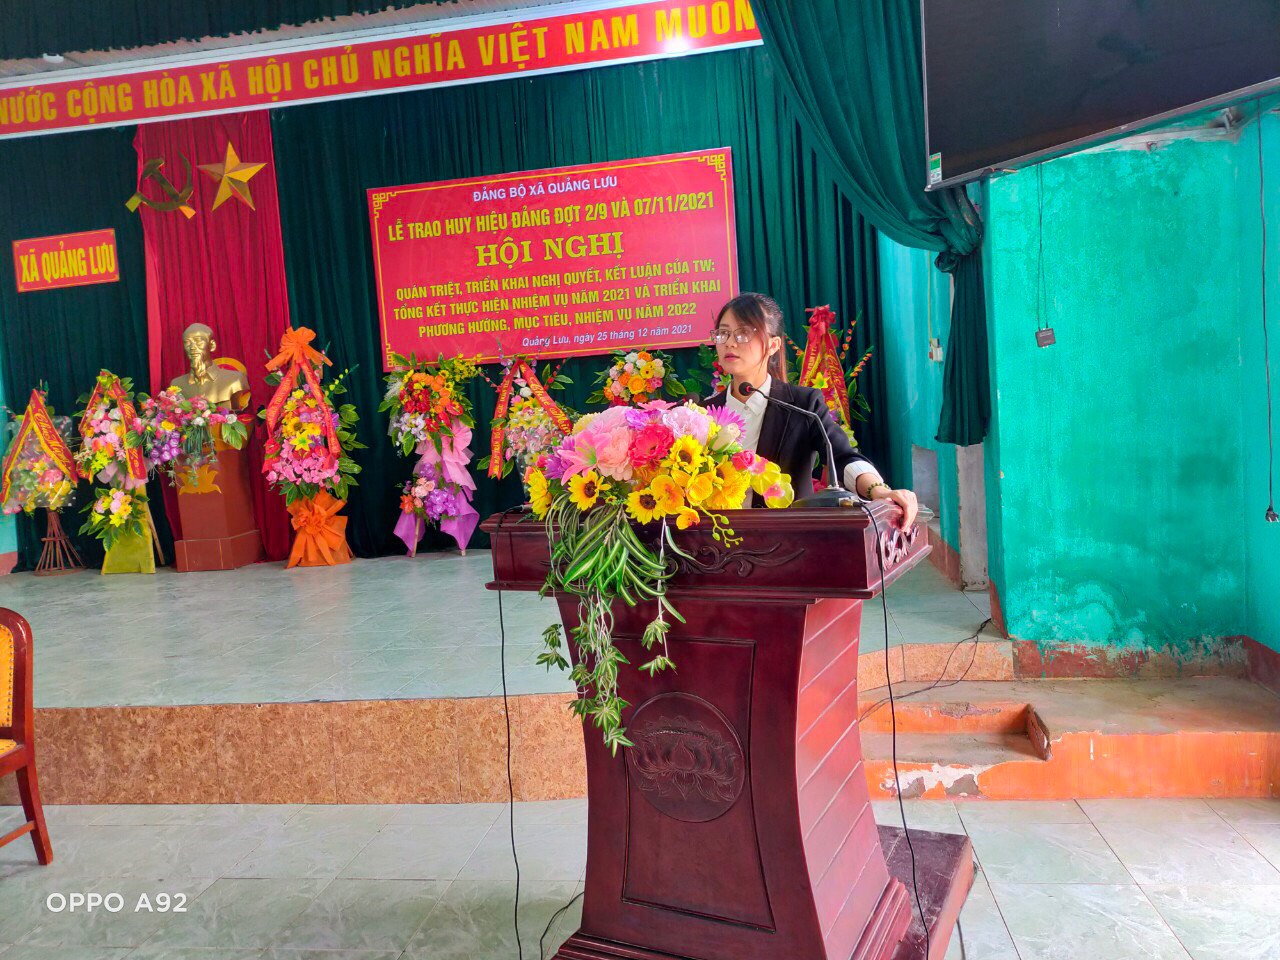 Đảng bộ xã Quảng Lưu tổ chức hội nghị quán triệt triển khai, nghị quyết, kết luận của TW tổng kết thực hiện nhiệm vụ năm 2021, phương hướng mục tiêu nhiệm vụ năm 2022